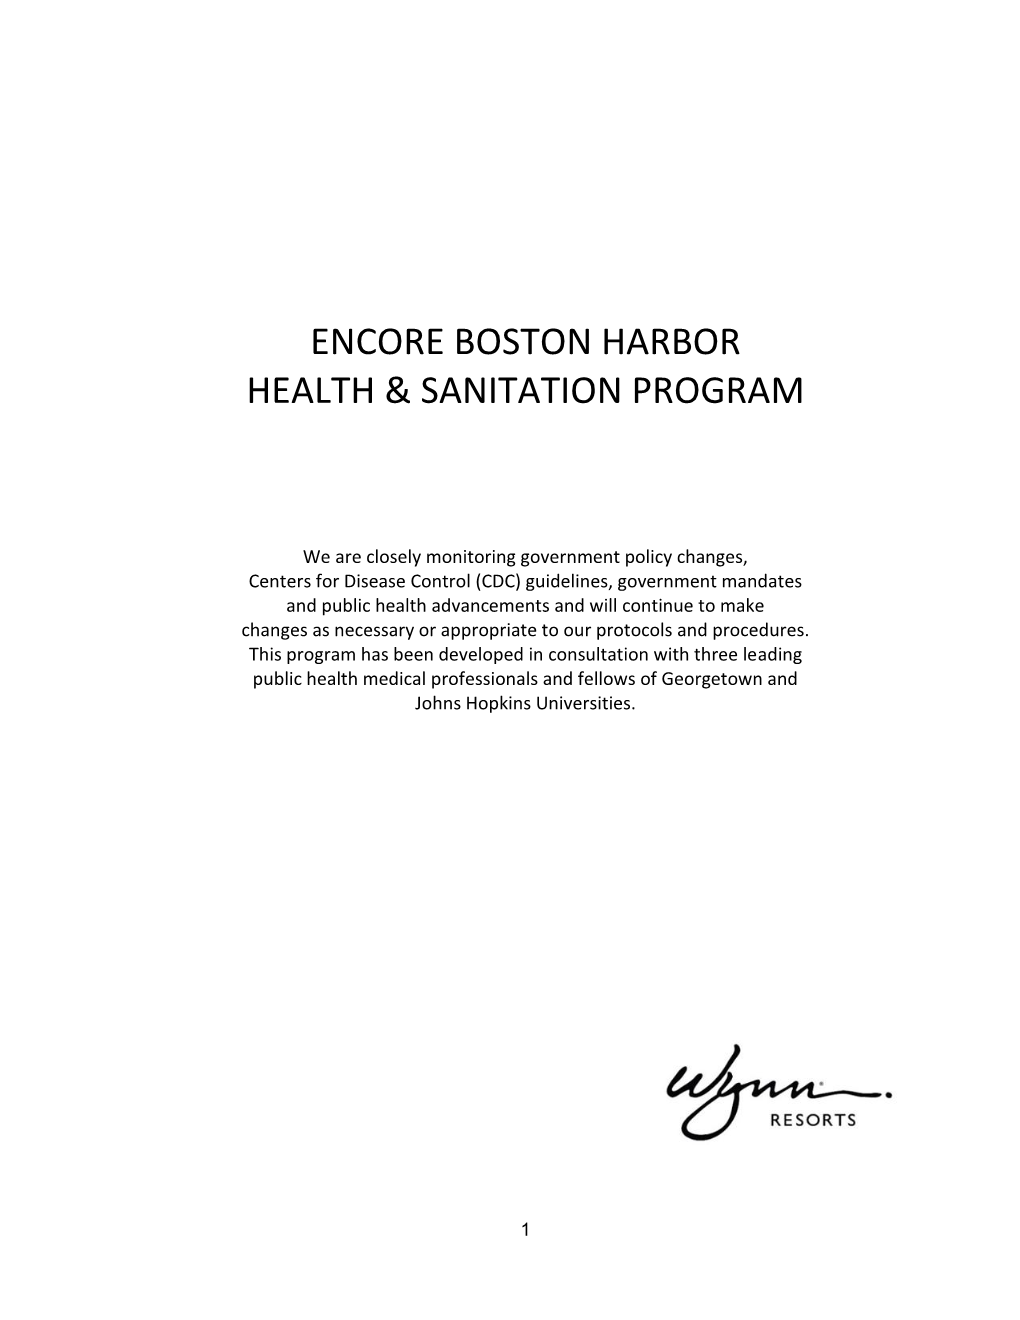 Encore Boston Harbor Health & Sanitation Program